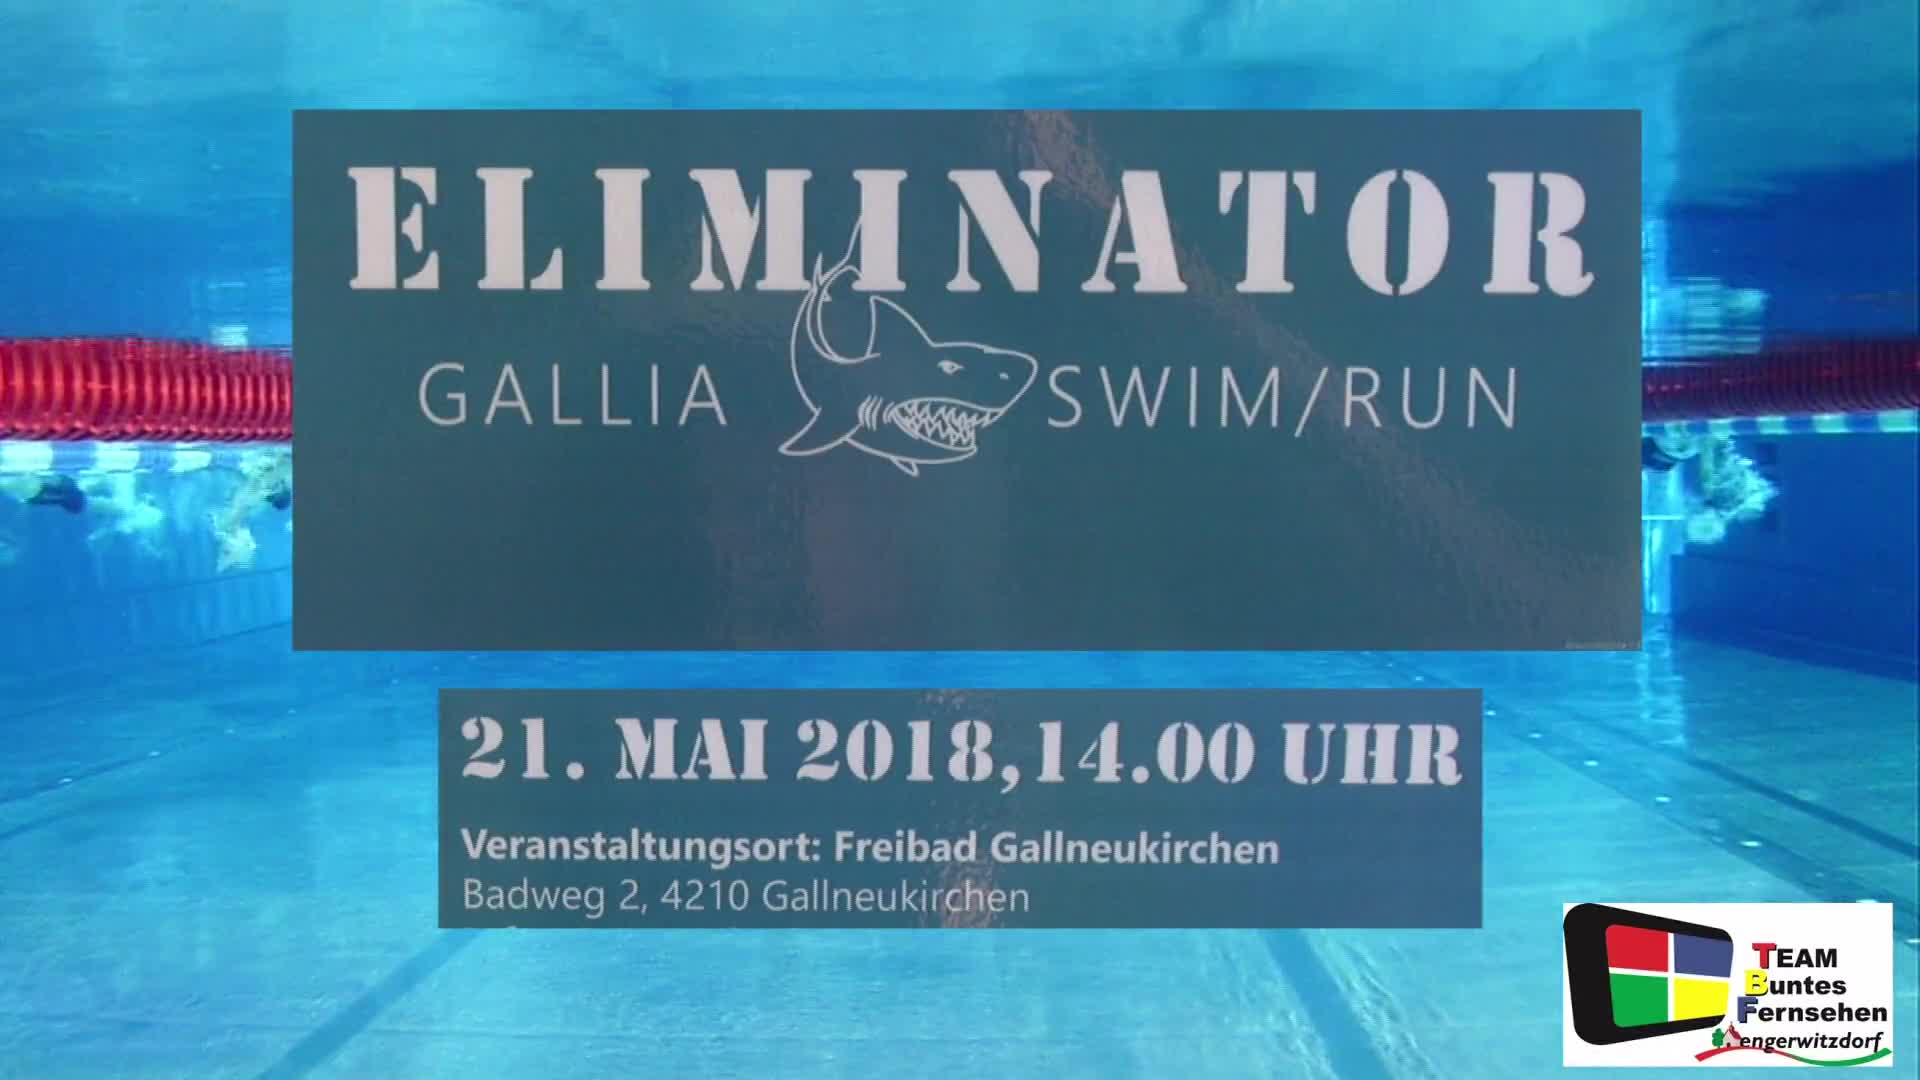 1. Gallia Swim+Run Eliminator